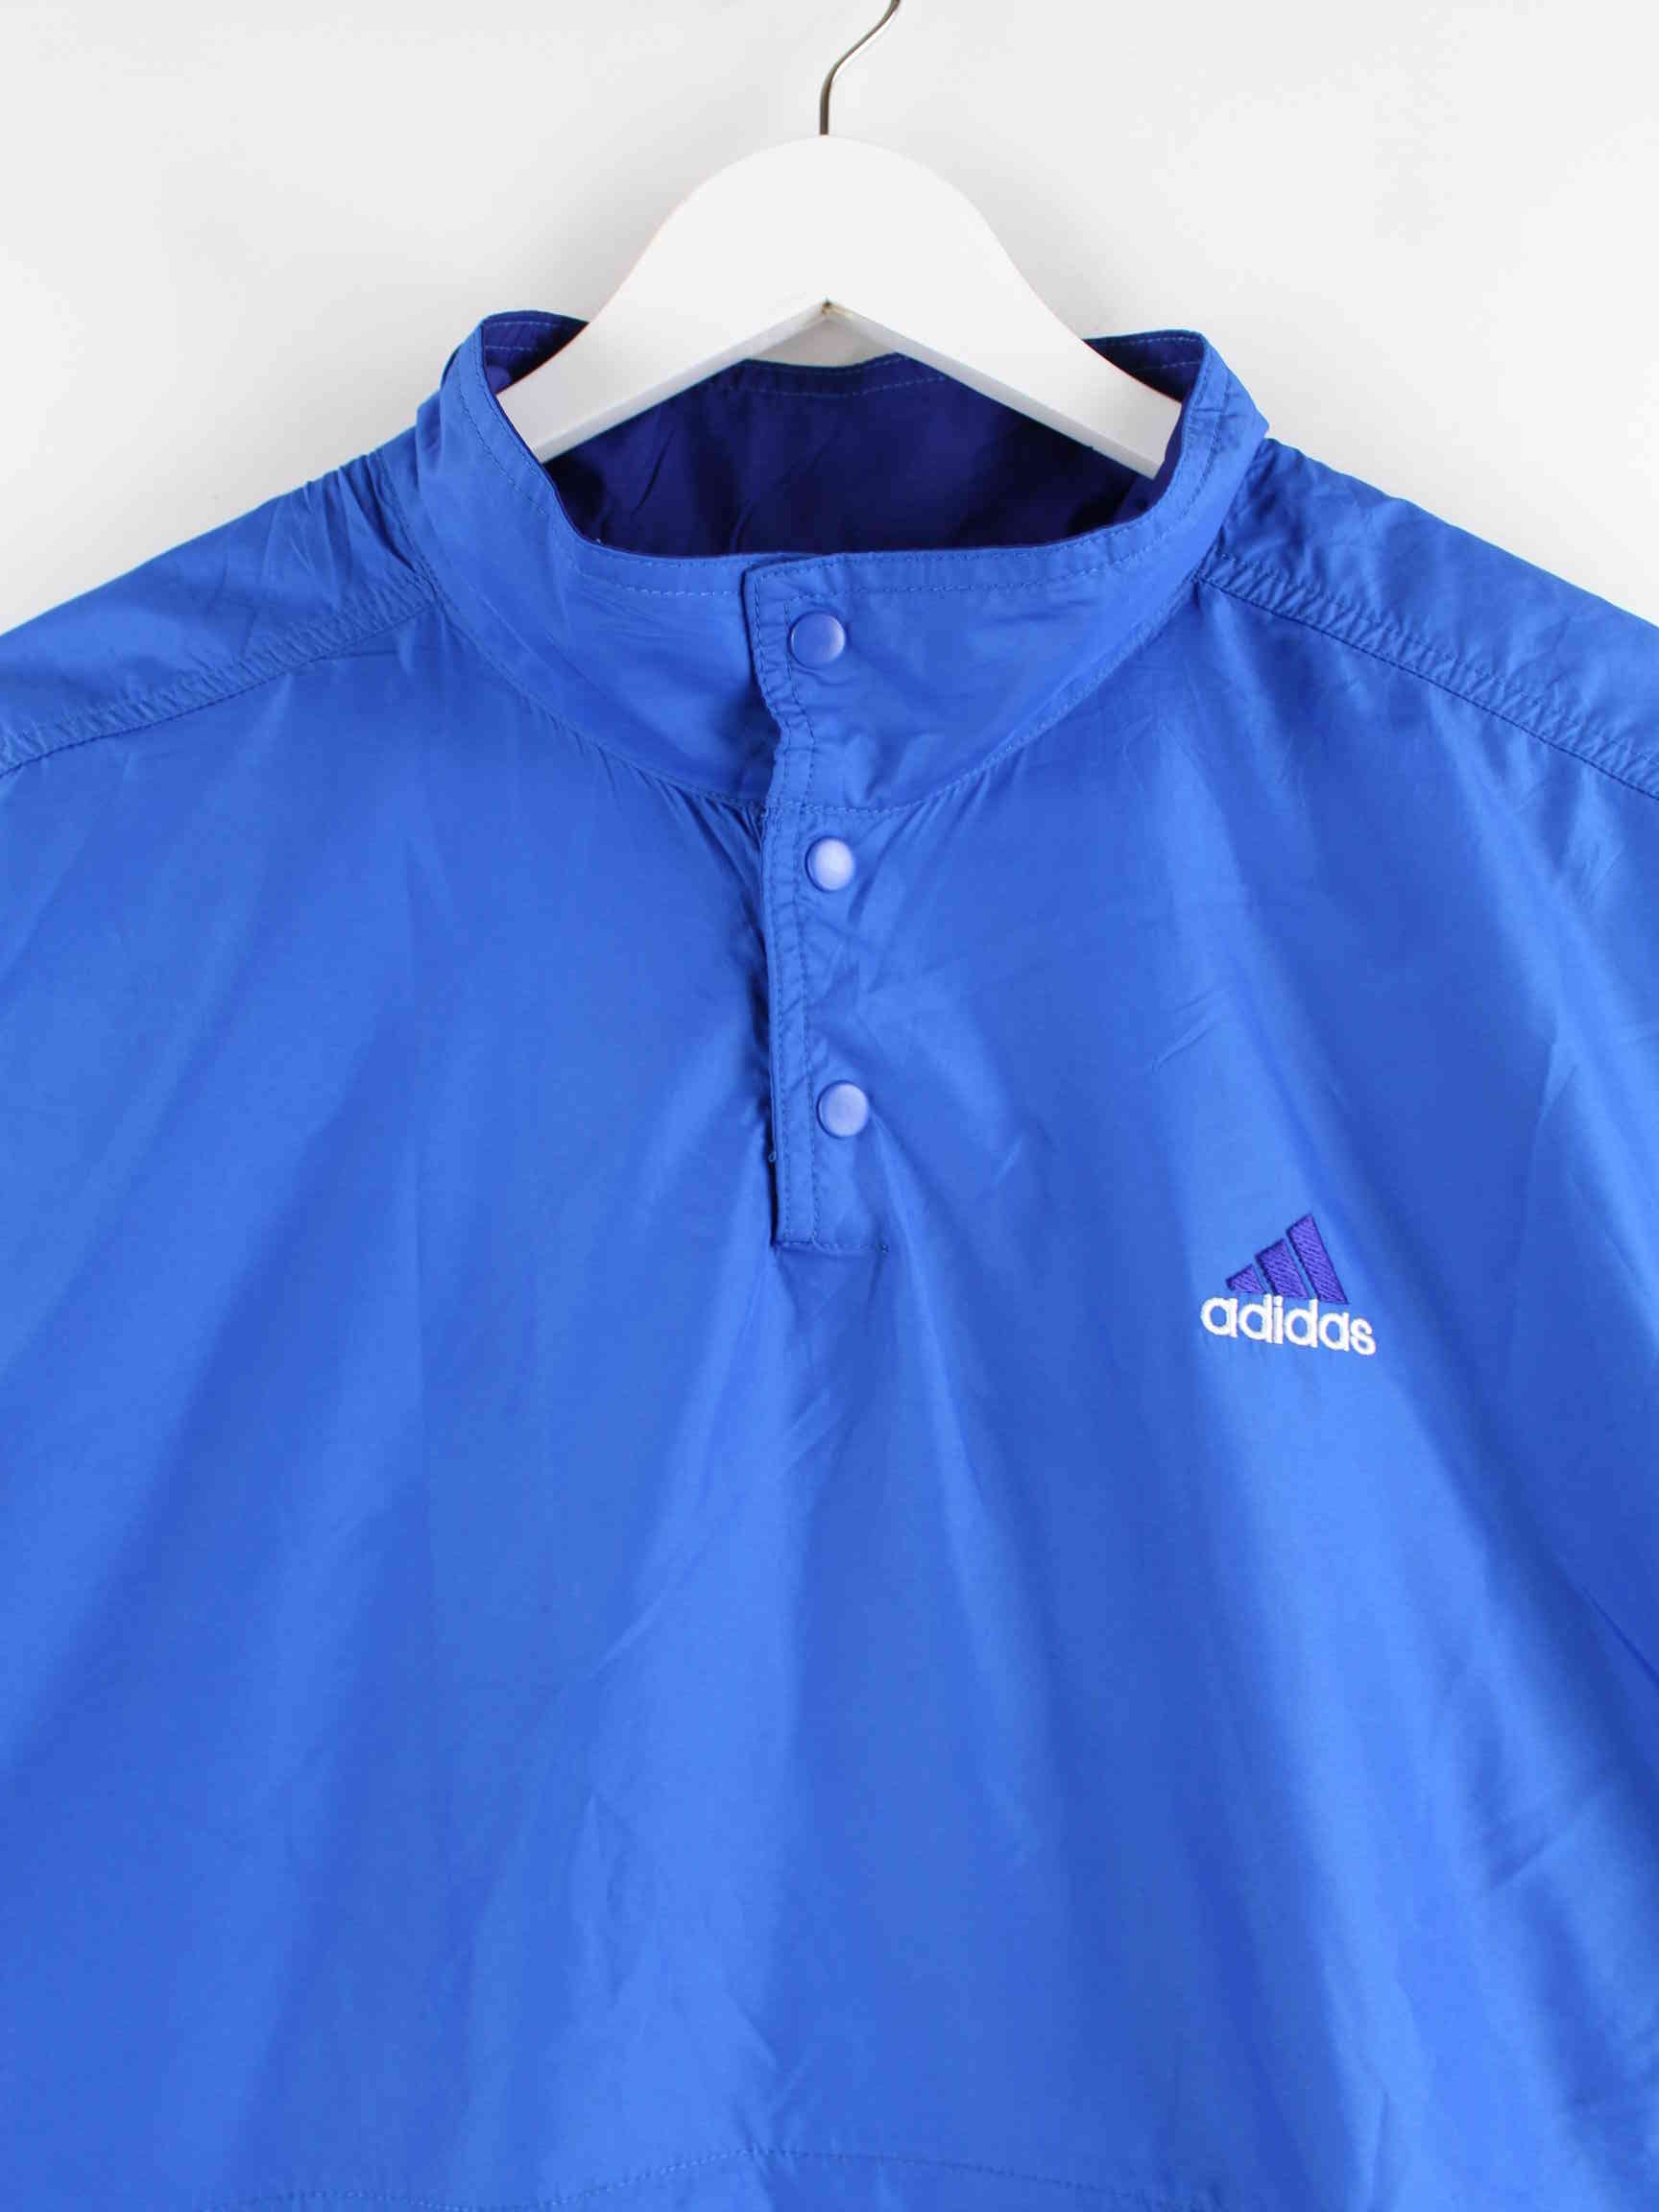 Adidas 90s Vintage Windbreaker Jacke Blau L (detail image 1)